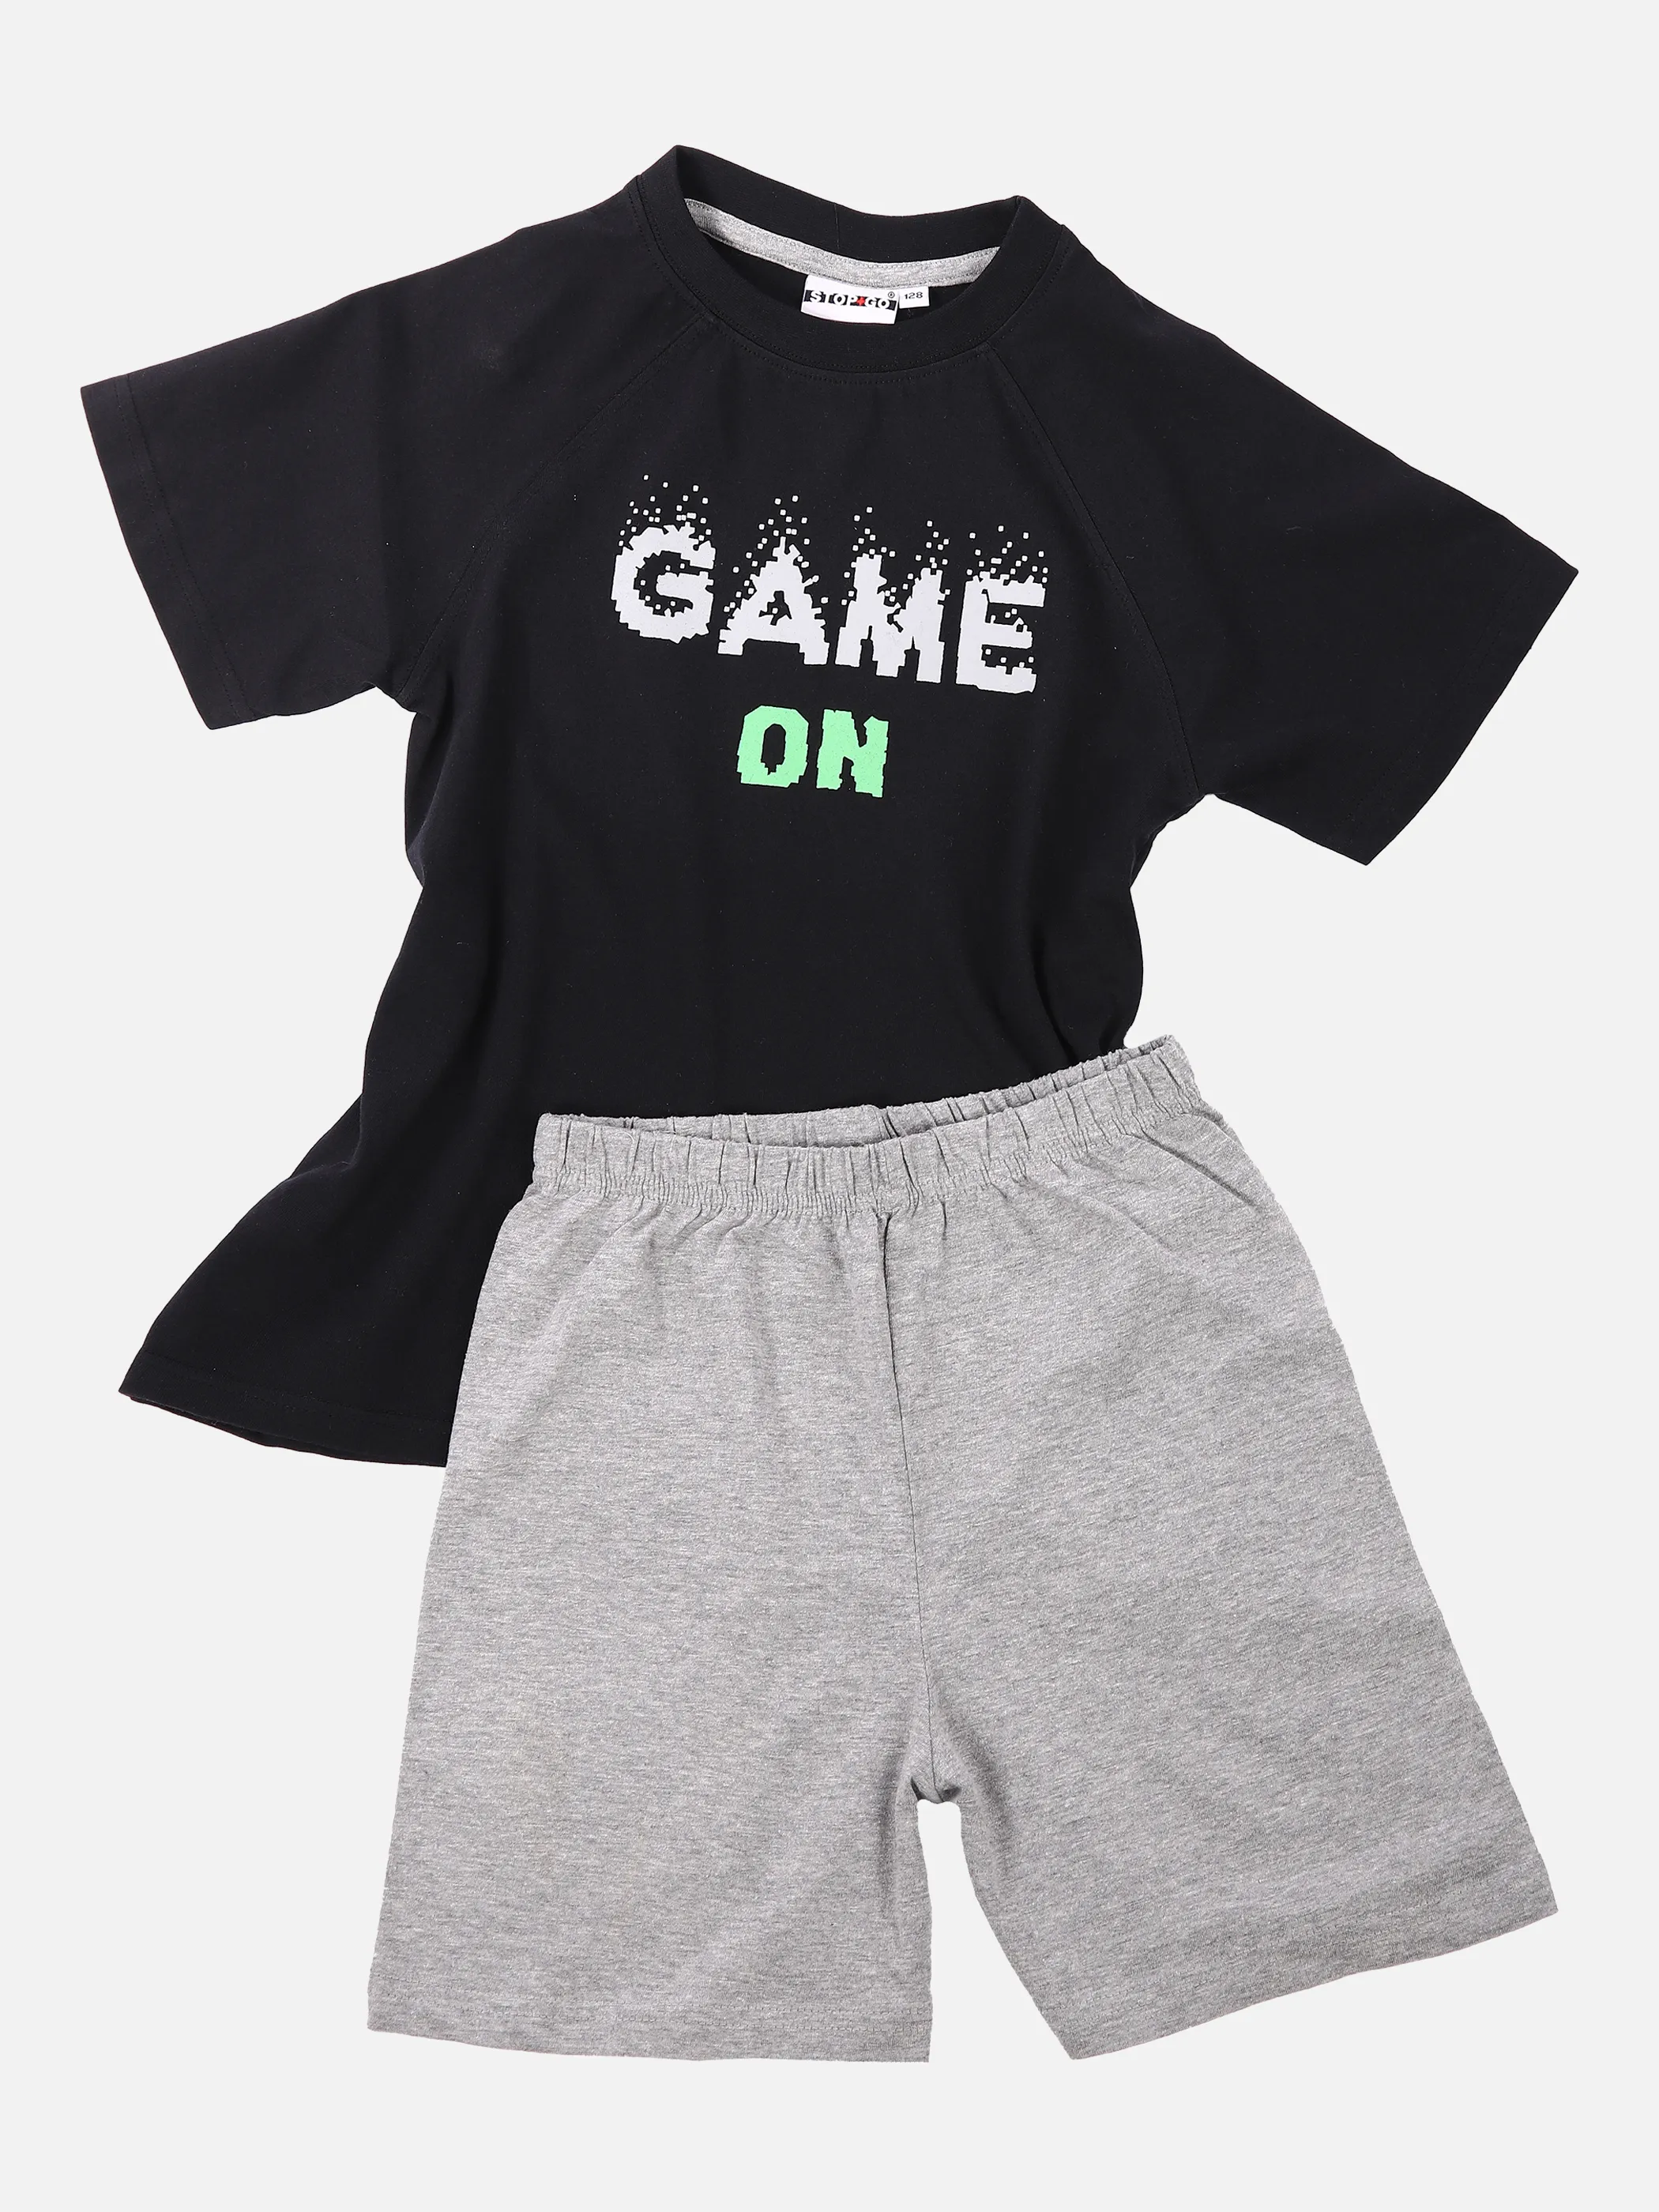 Stop + Go Kn. Pyjama Game One Shirt Schwarz 851057 BLACK/WHIT 1